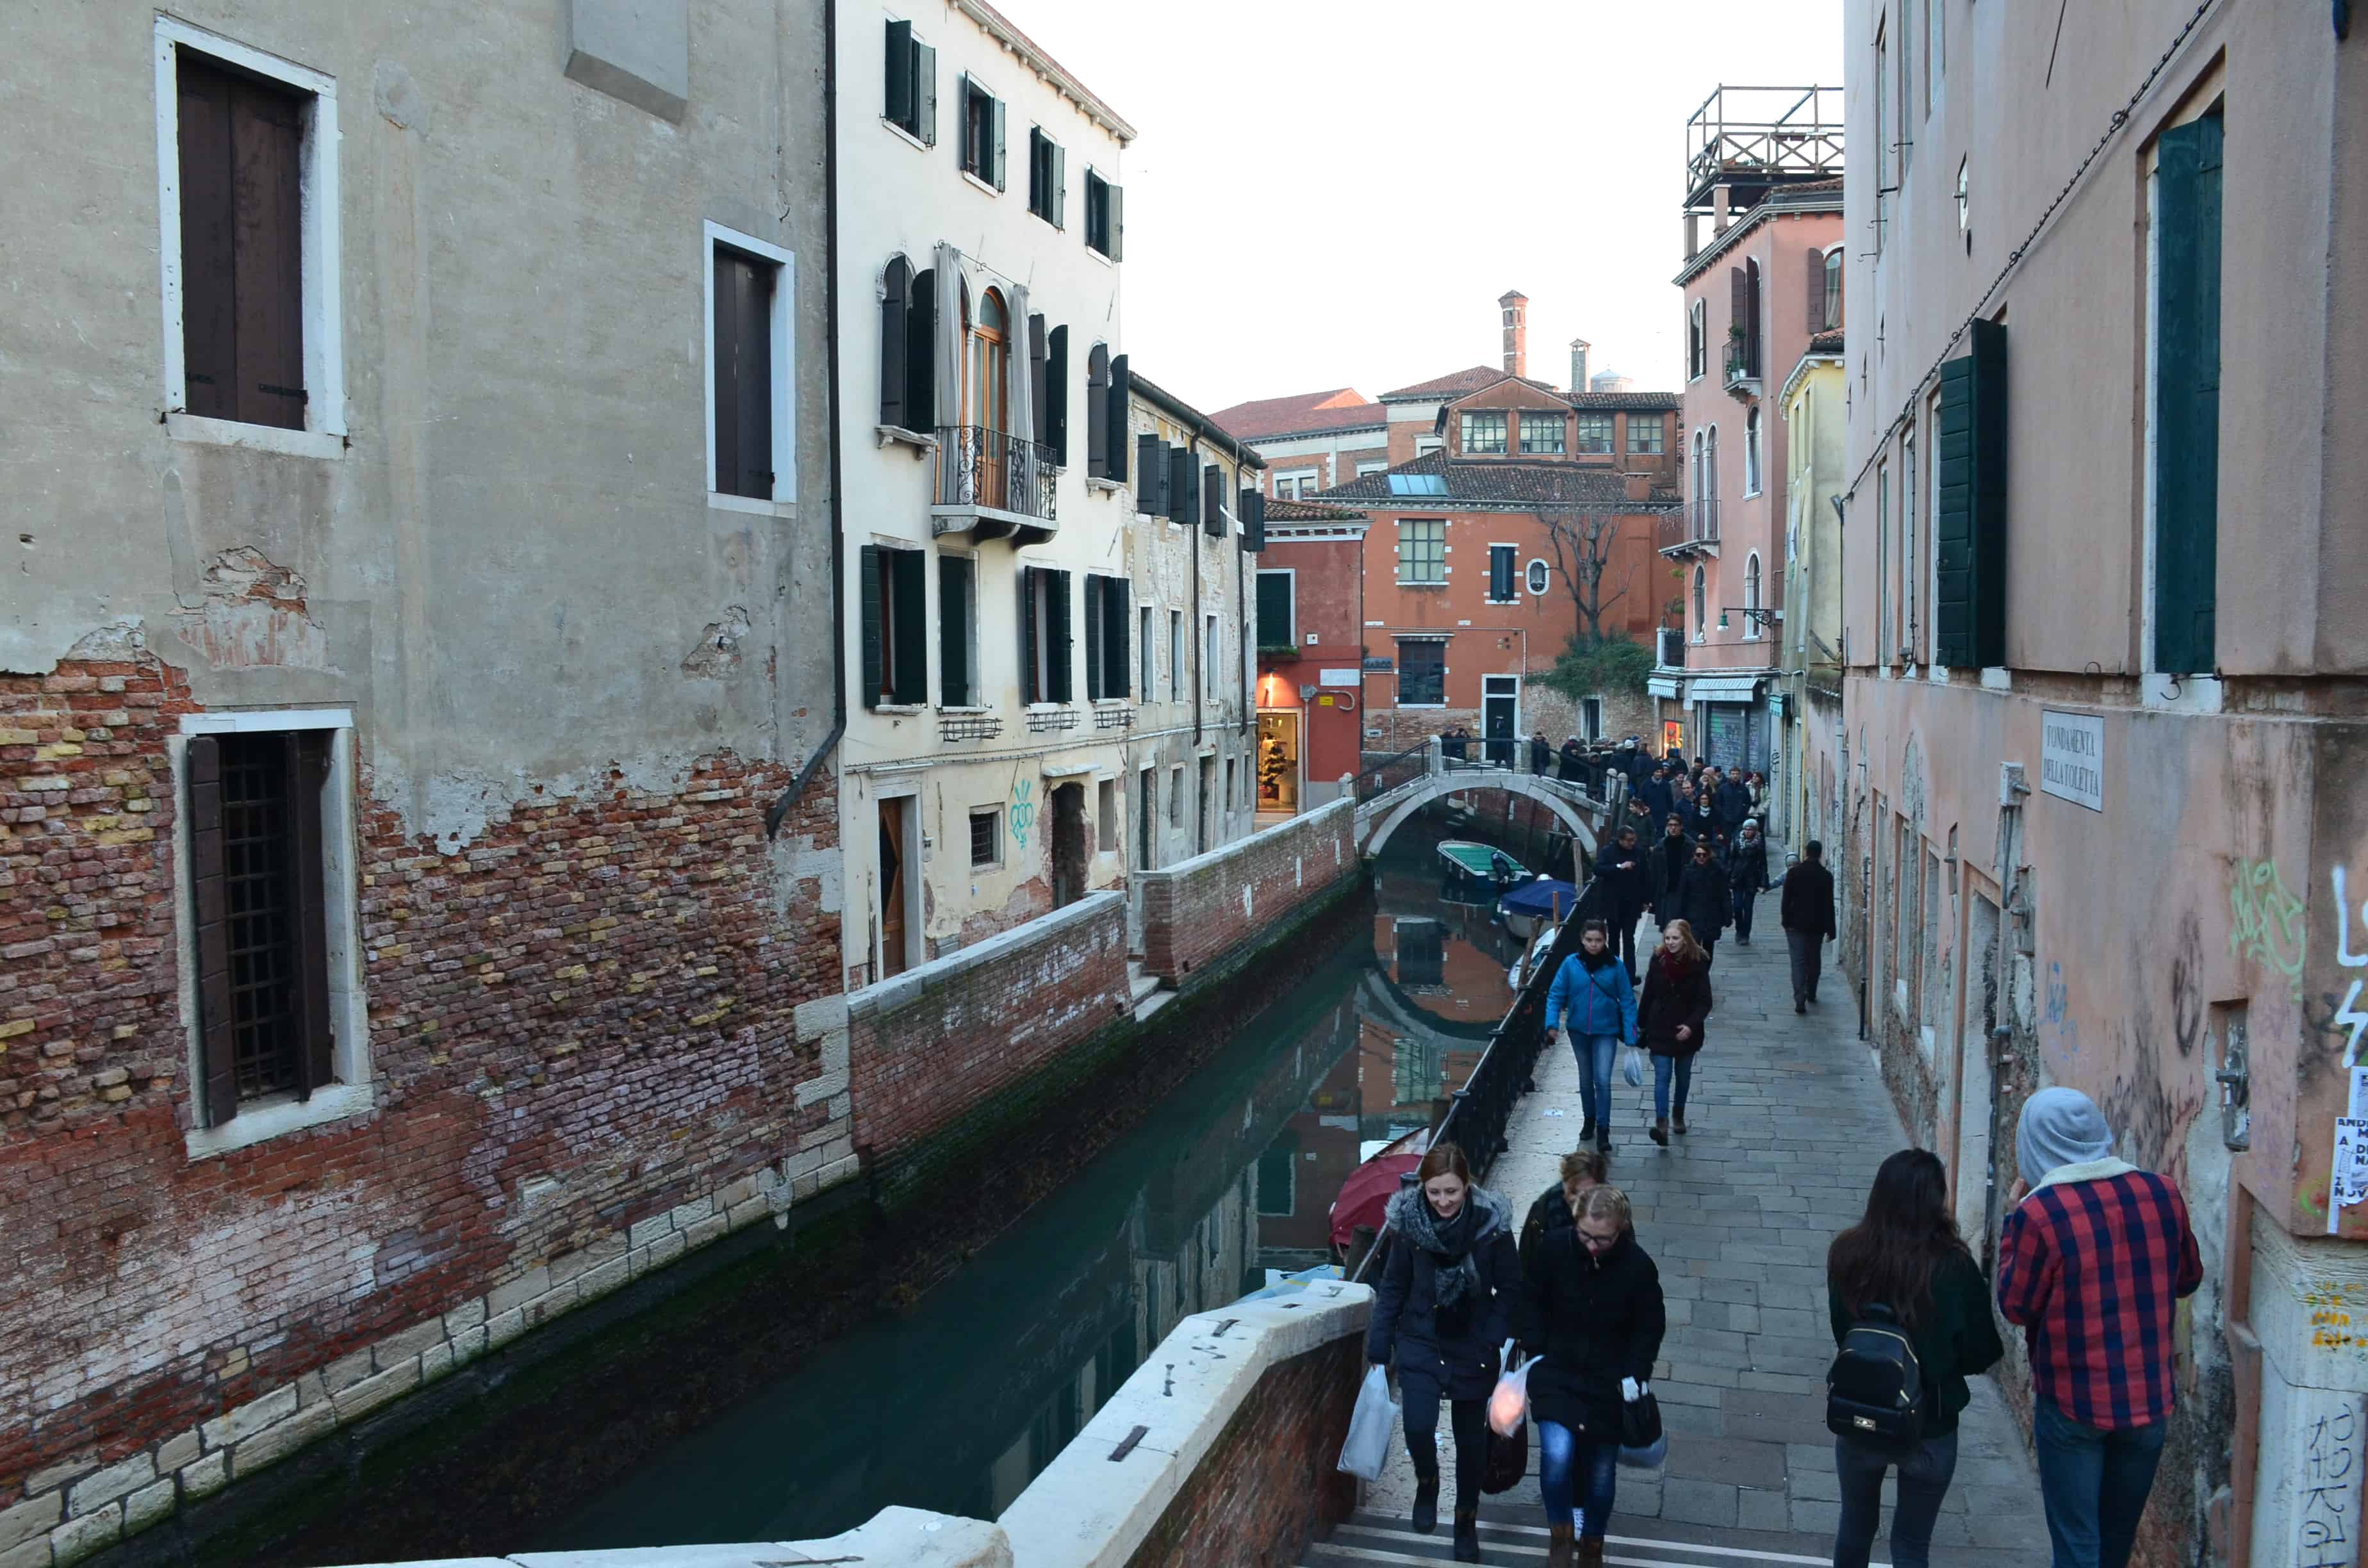 Wandering through Dorsoduro in Venice, Italy